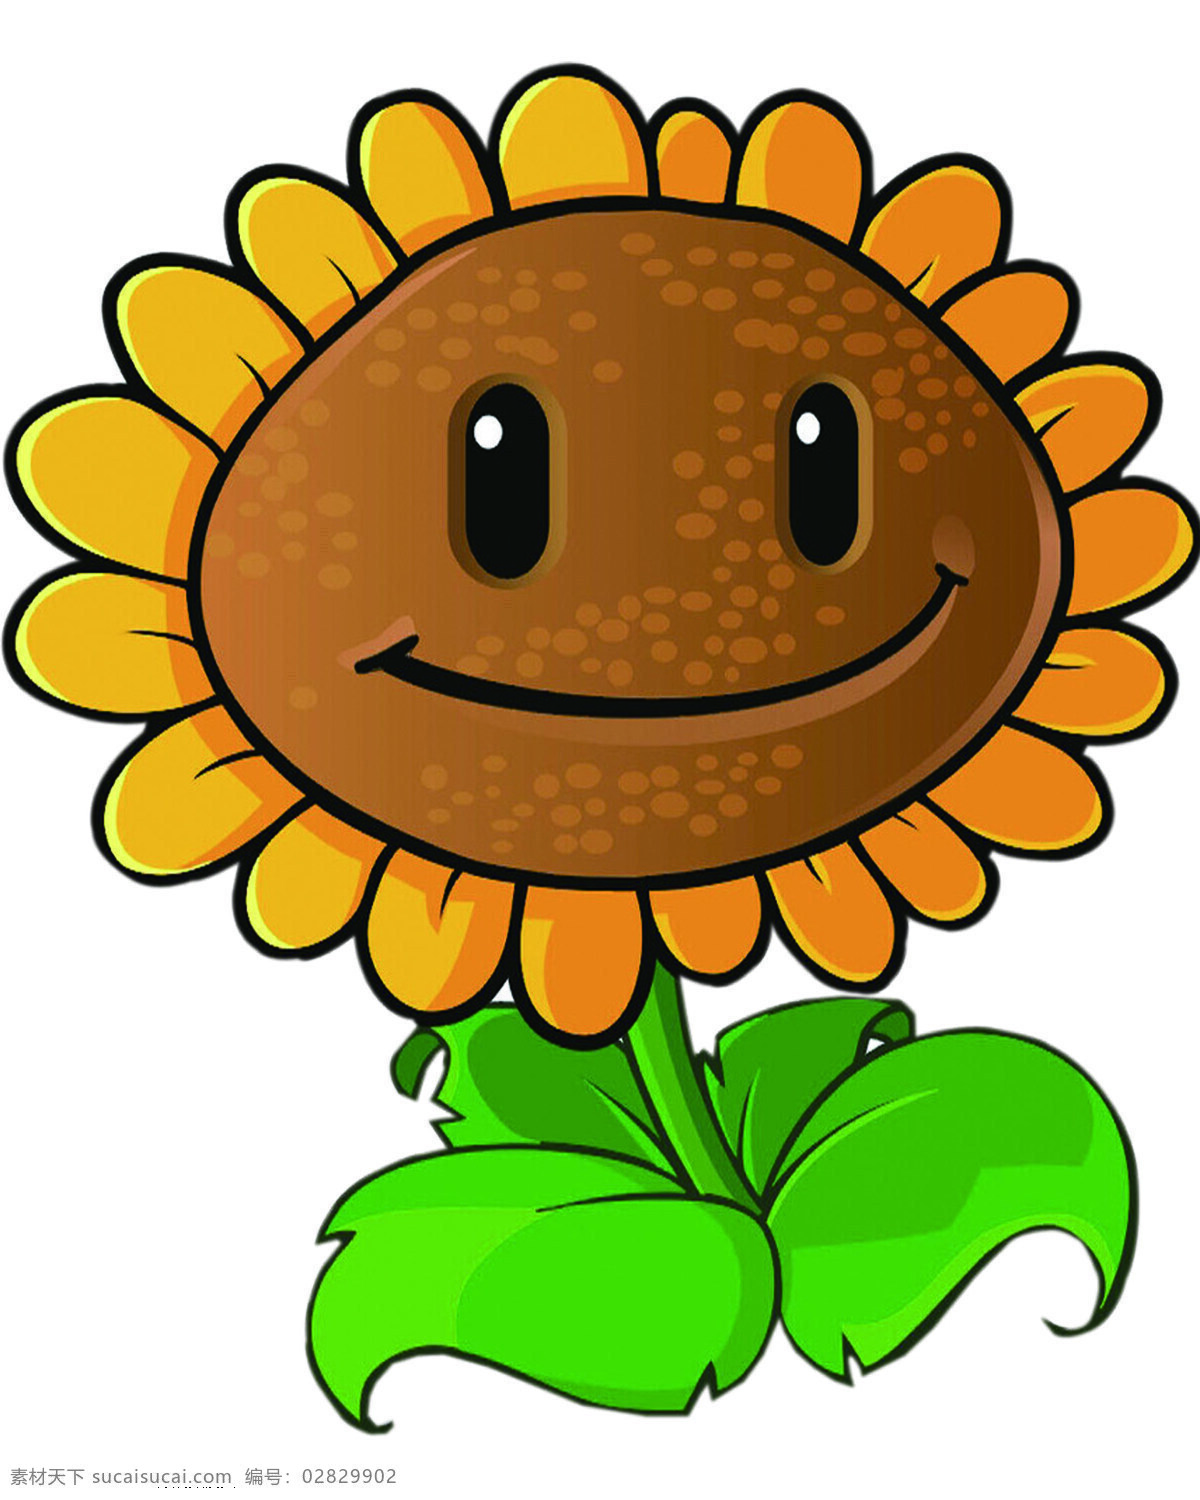 植物大战僵尸 僵尸 植物 万圣节 游戏 向日葵 太阳花 动漫动画